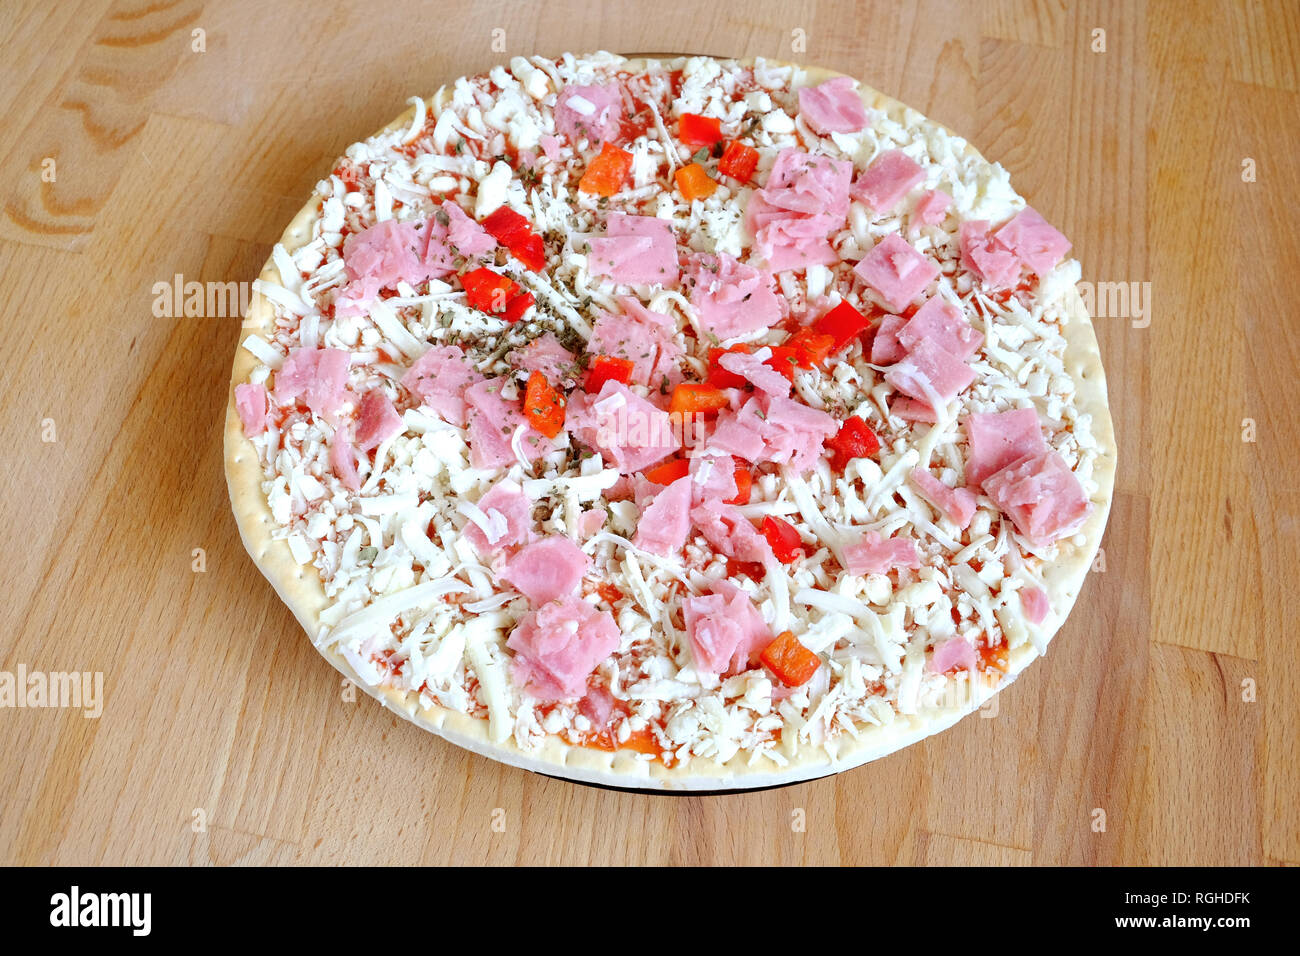 Les matières n'est pas prêt la pizza sur une table de cuisine en bois brun sable vue supérieure libre Banque D'Images